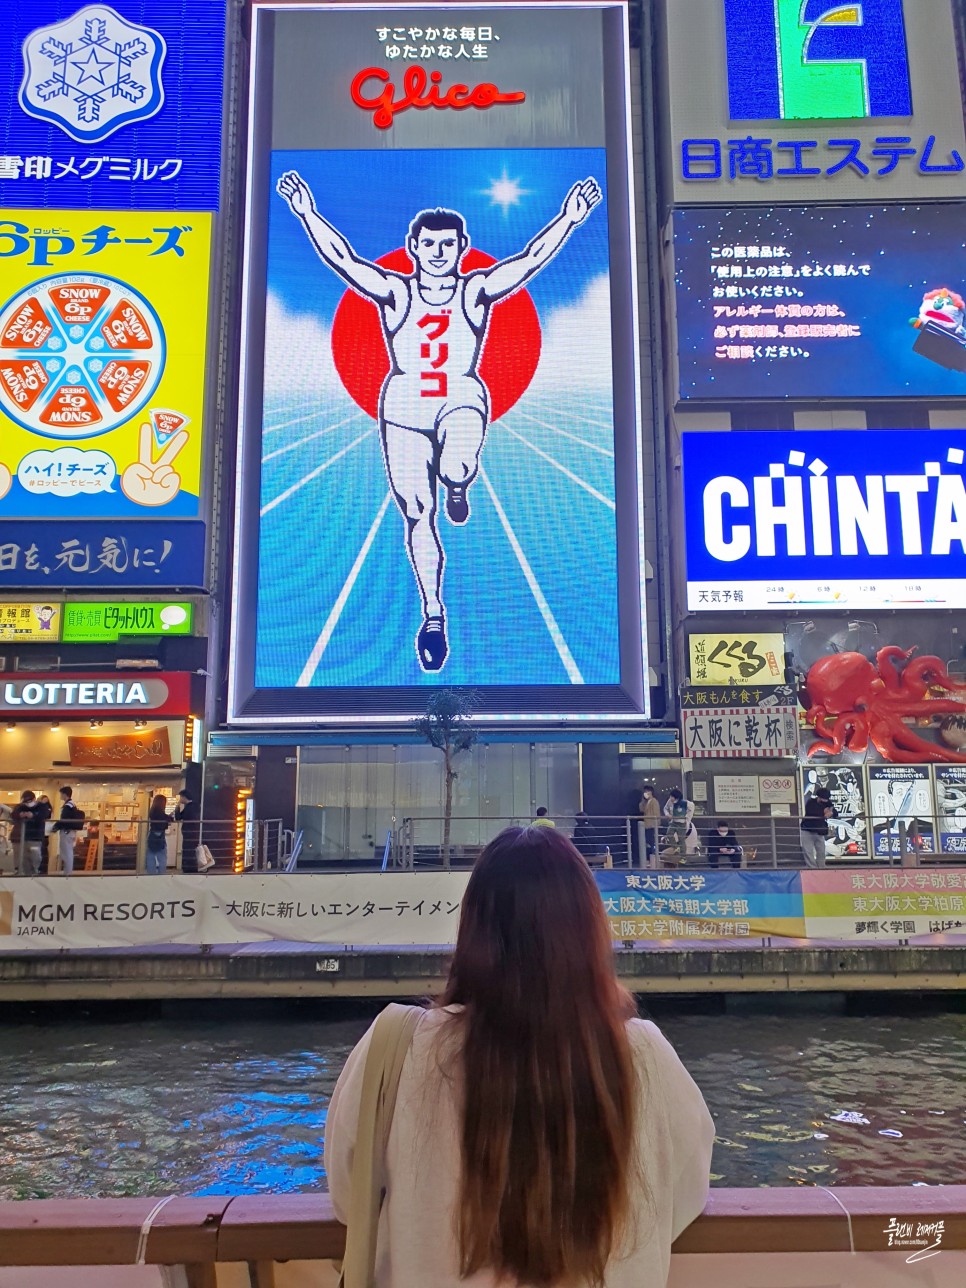 해외 일본여행 준비물 간사이쓰루패스 유심칩구매 여행자보험